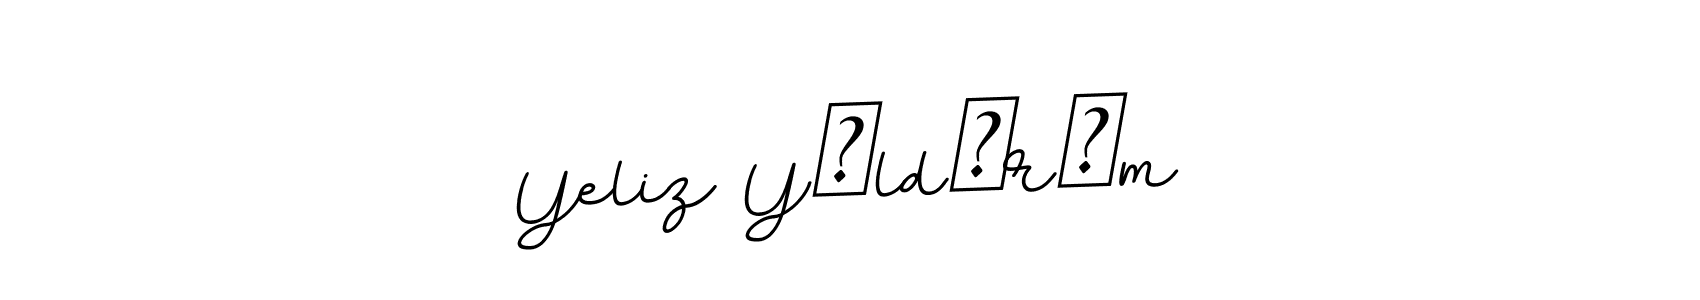 How to Draw Yeliz Yıldırım signature style? BallpointsItalic-DORy9 is a latest design signature styles for name Yeliz Yıldırım. Yeliz Yıldırım signature style 11 images and pictures png